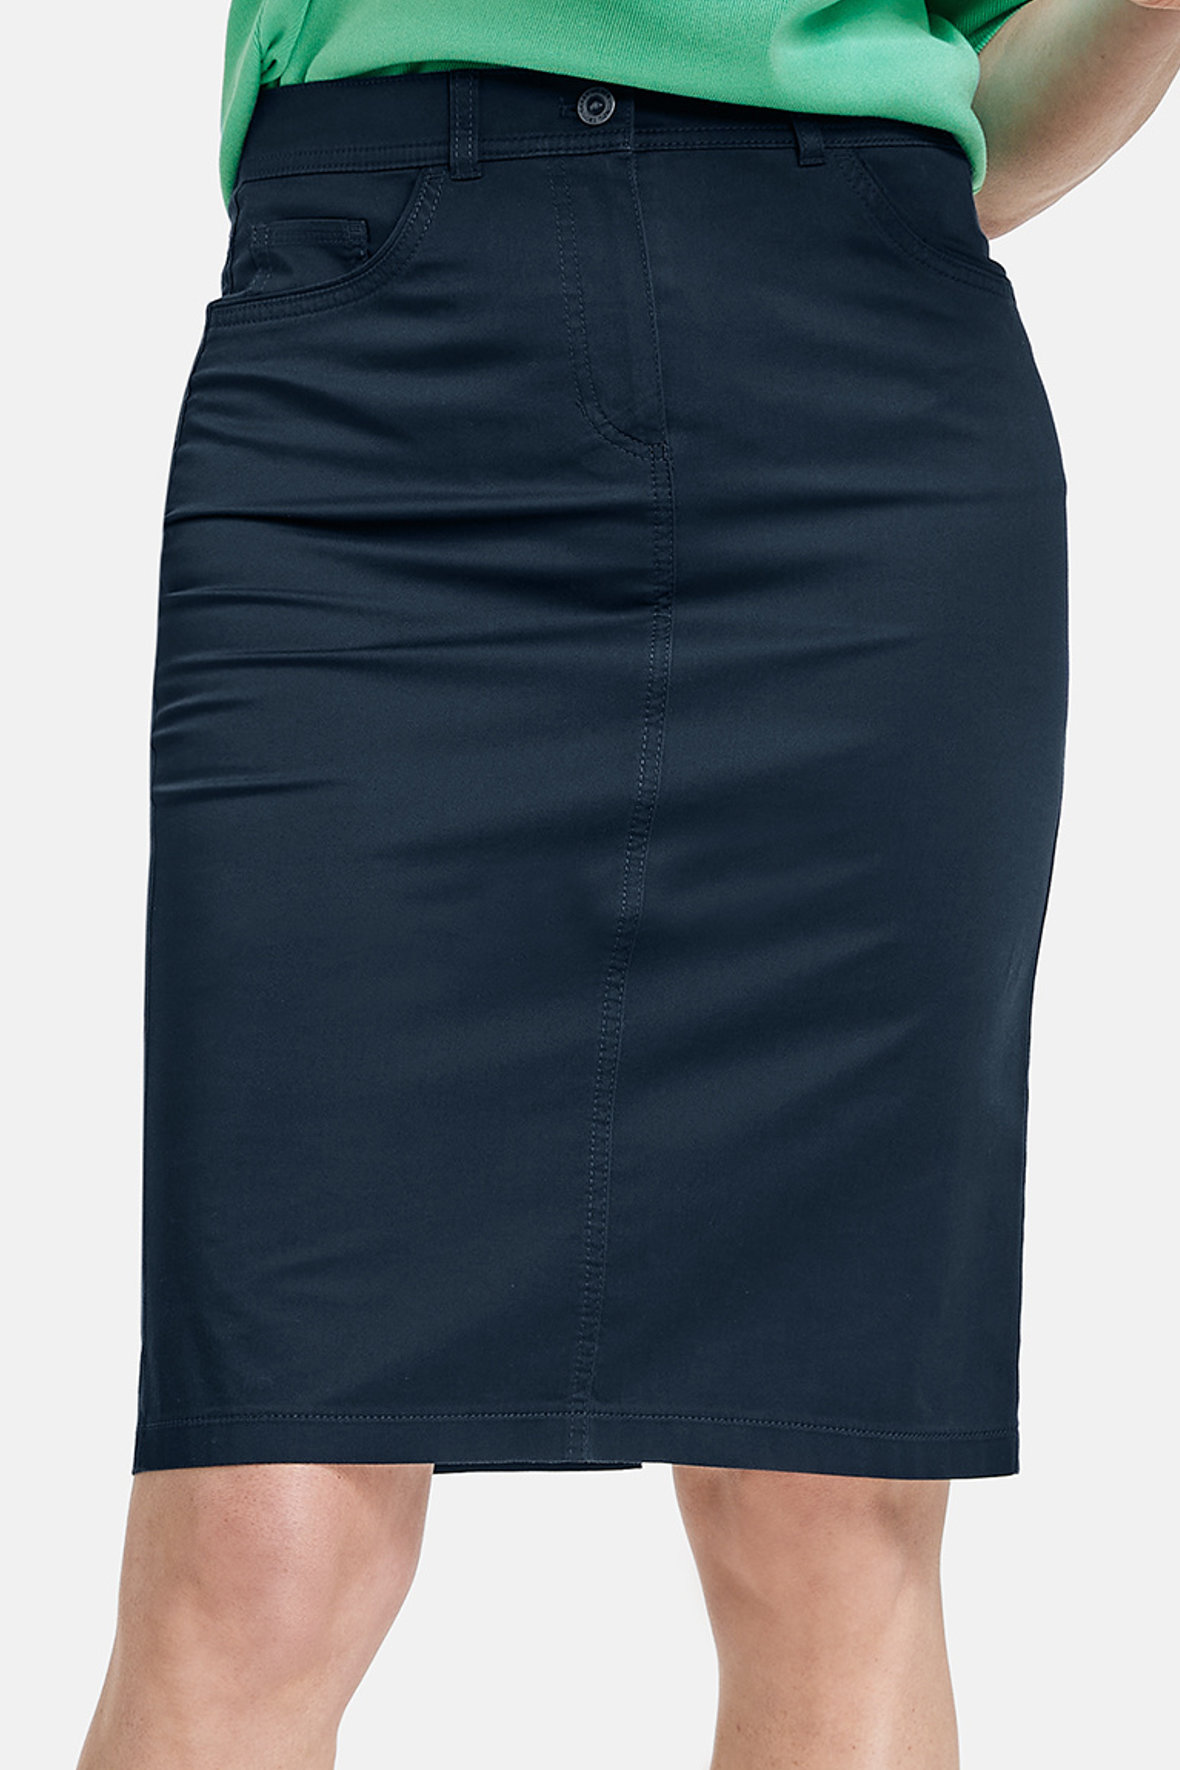 mild halfrond schokkend Gerry Weber sommer nederdel med stræk - flere farver - mørkeblå - Hos Lohse